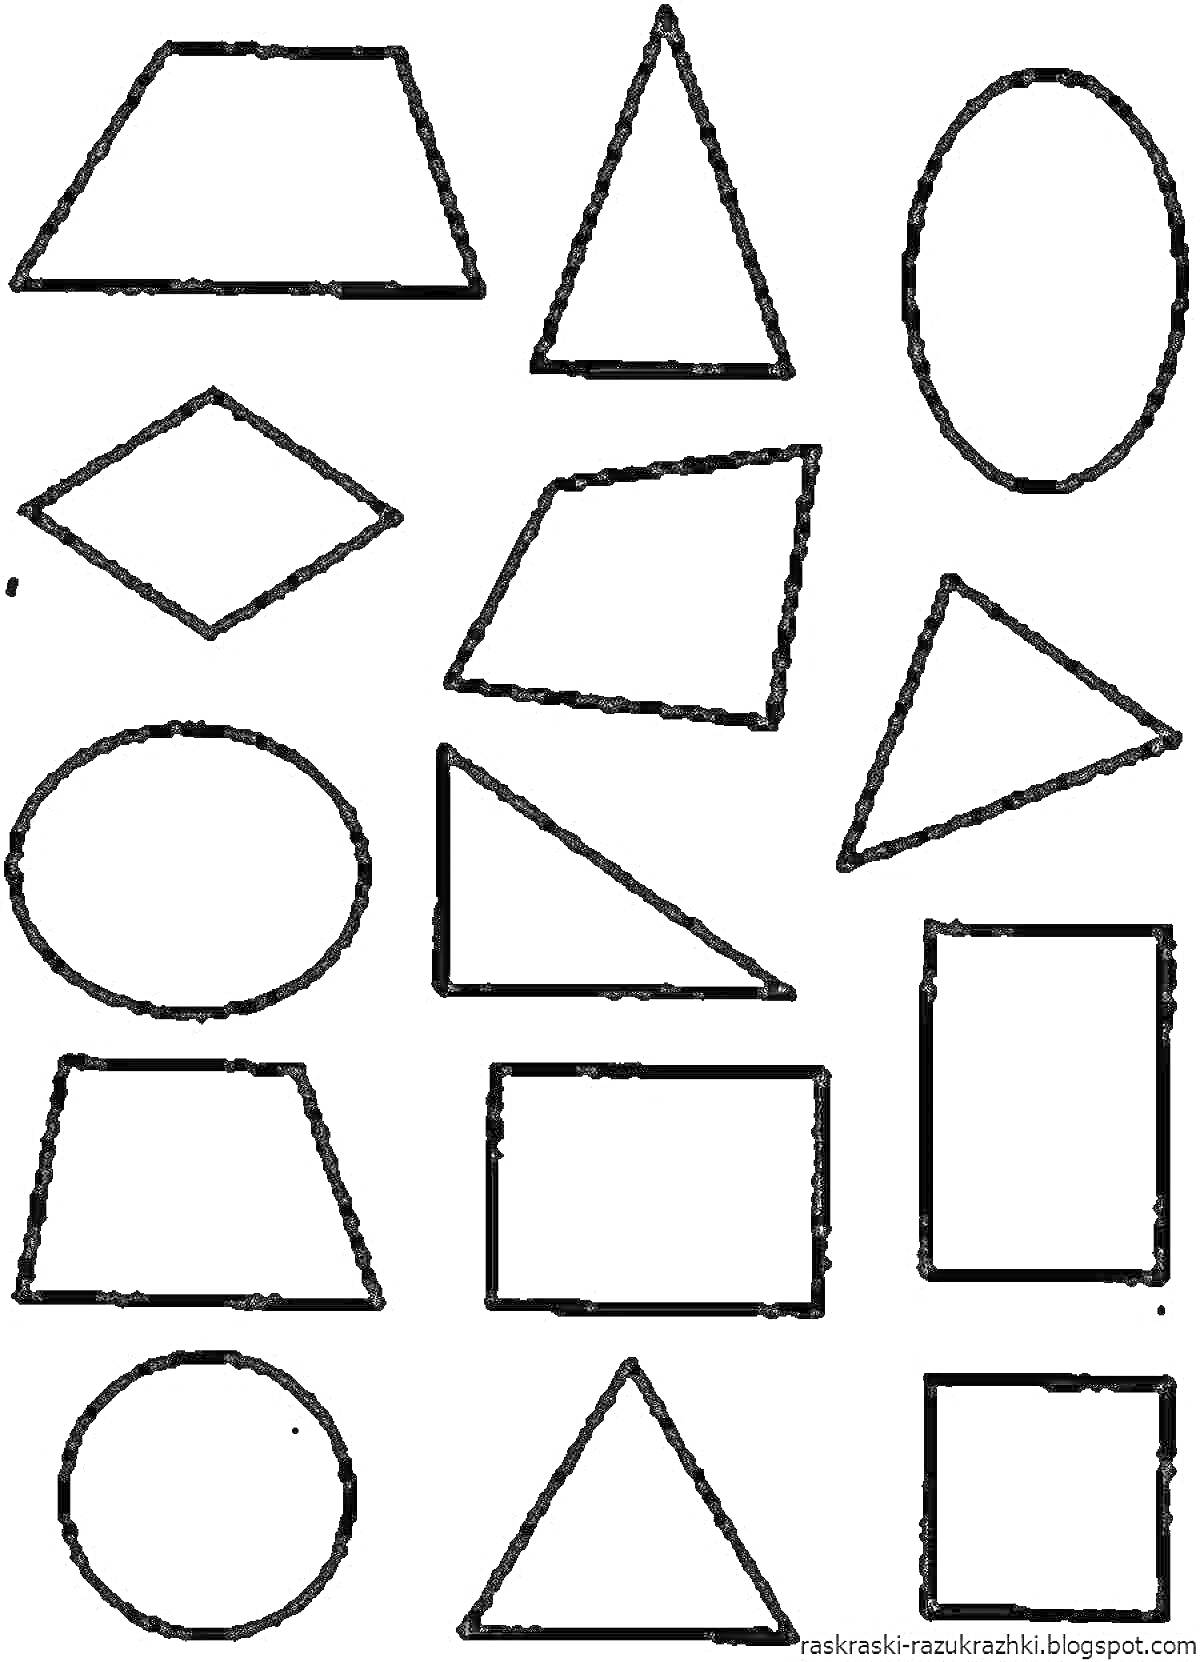 Раскраска Круг, квадрат, треугольник, прямоугольник, овал, ромб, трапеция для детей 3-4 лет